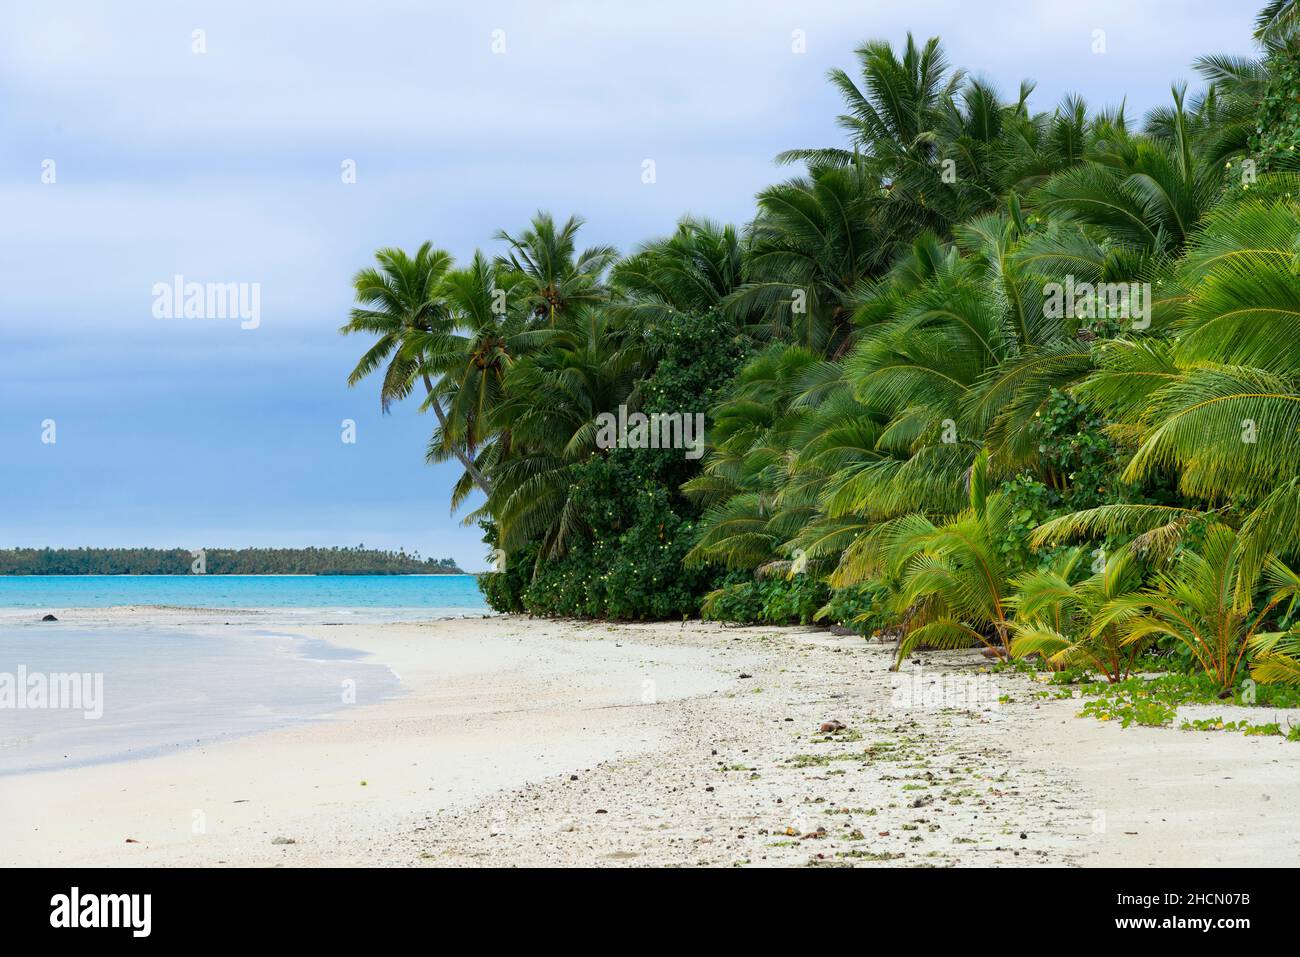 La hermosa playa y el mar turquesa en la isla de un pie a poca distancia de Aitutaki una de las Islas Cook, Pacífico Sur Foto de stock